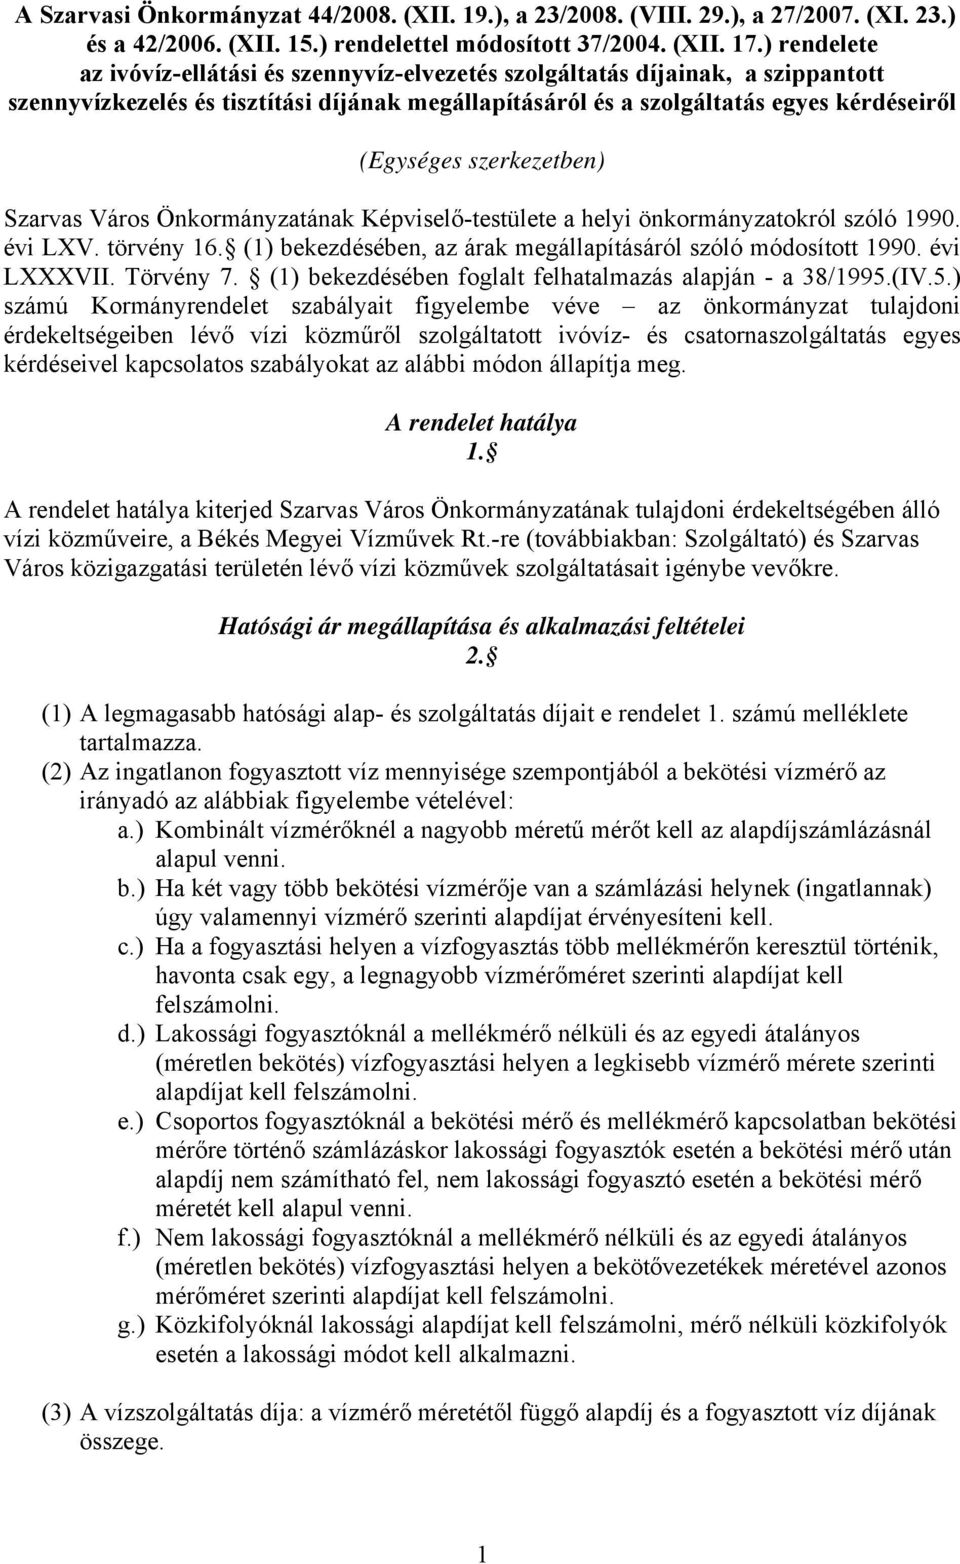 szerkezetben) Szarvas Város Önkormányzatának Képviselő-testülete a helyi önkormányzatokról szóló 1990. évi LXV. törvény 16. (1) bekezdésében, az árak megállapításáról szóló módosított 1990.